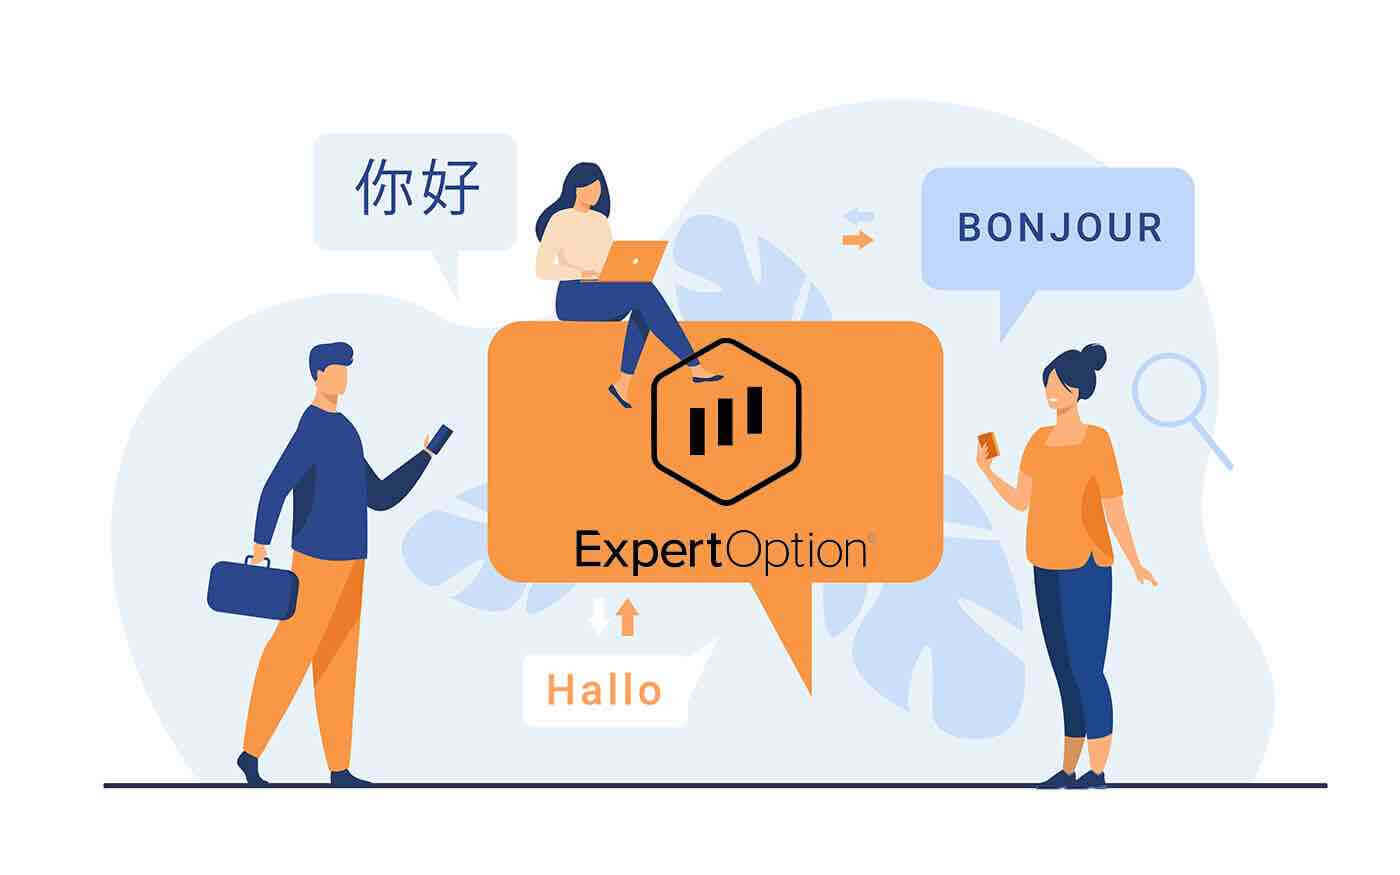  ExpertOption बहुभाषी समर्थन